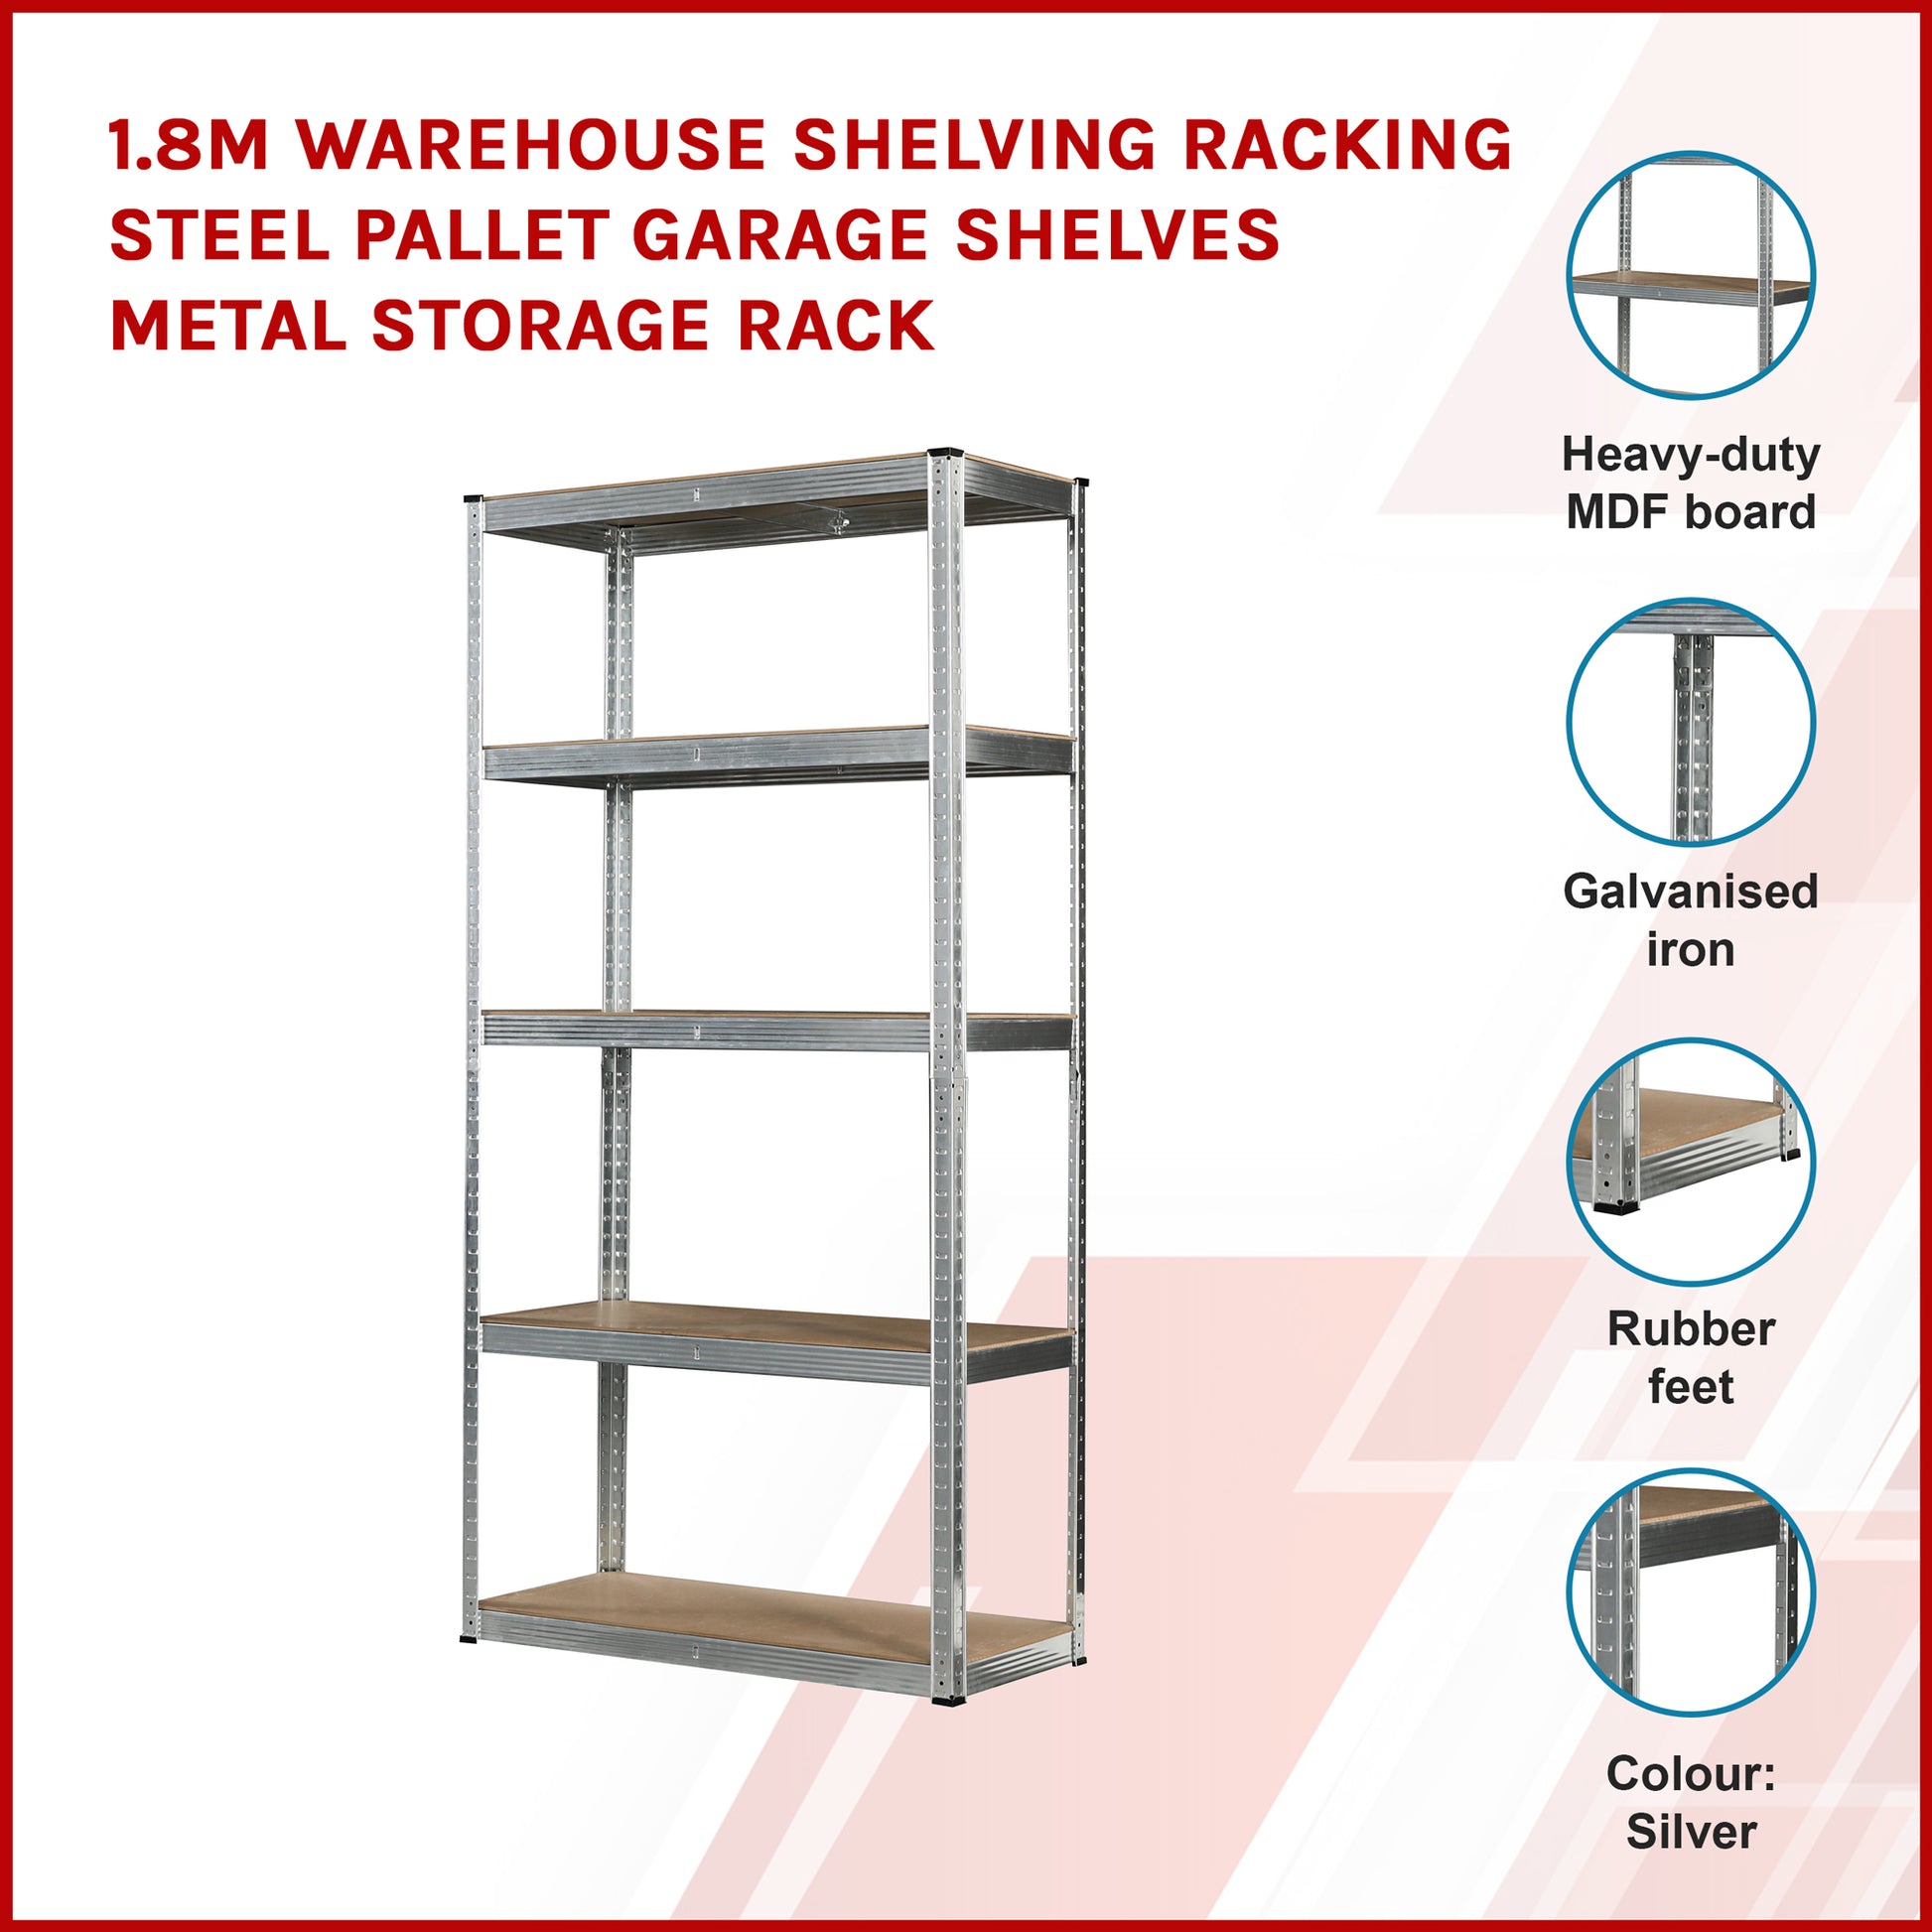 1.8M Warehouse Shelving Racking Steel Pallet Garage Shelves Metal Storage Rack - image3